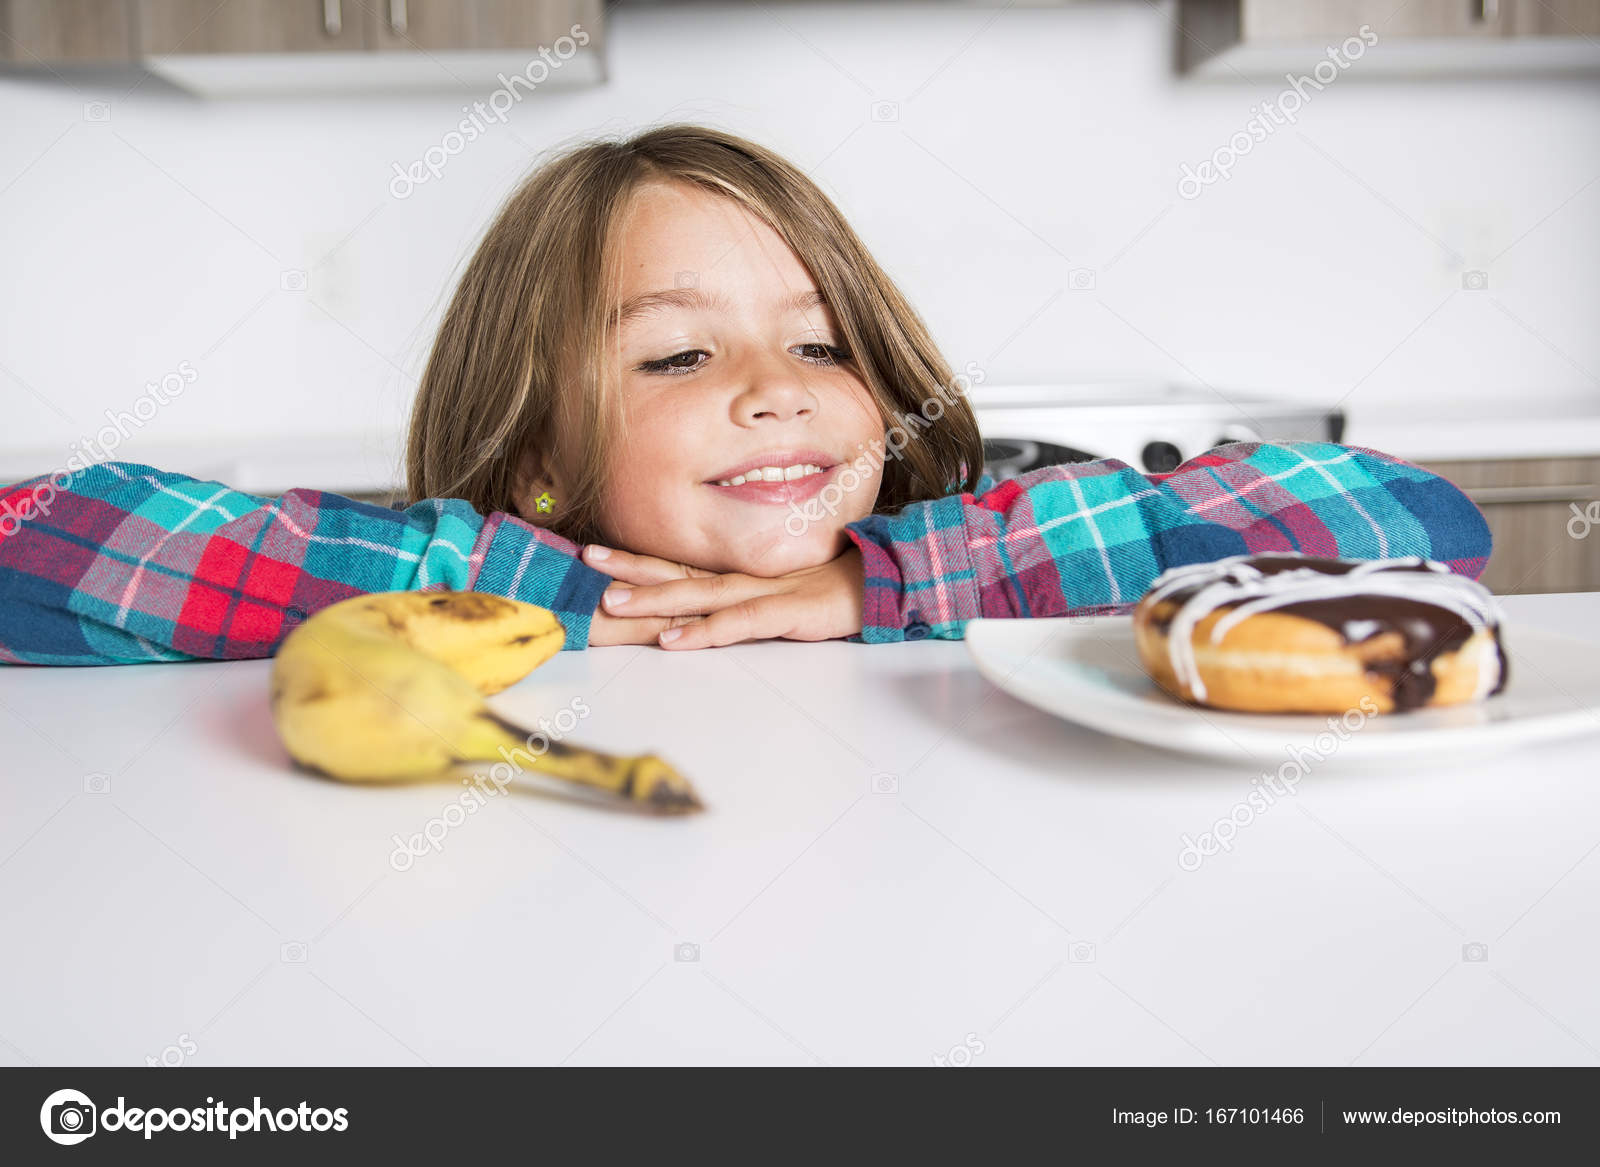 子供の健康的な野菜やおいしいお菓子の間を選択します ストック写真 C Lopolo 167101466